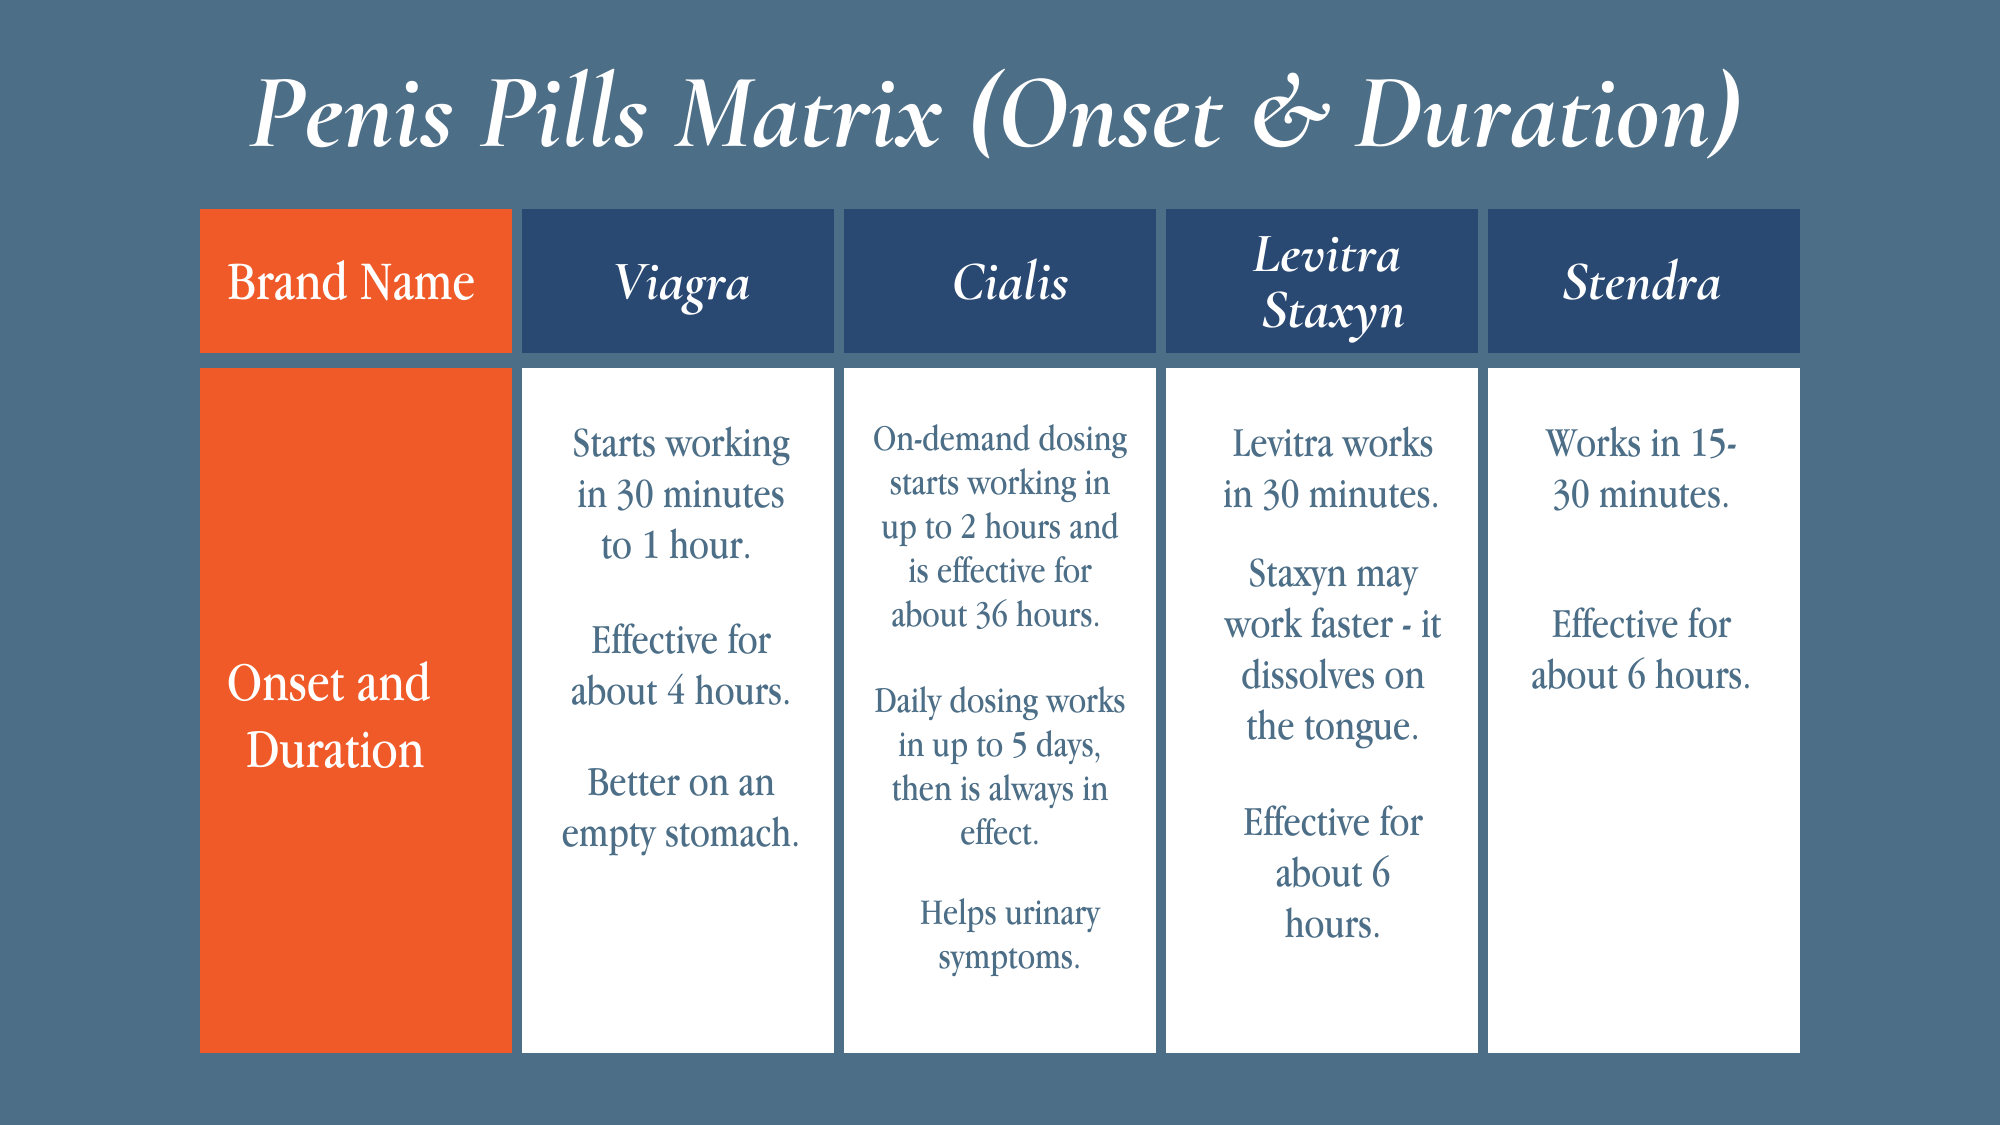 2penis-pills-matrix-1-penile-rehabilitation-program2